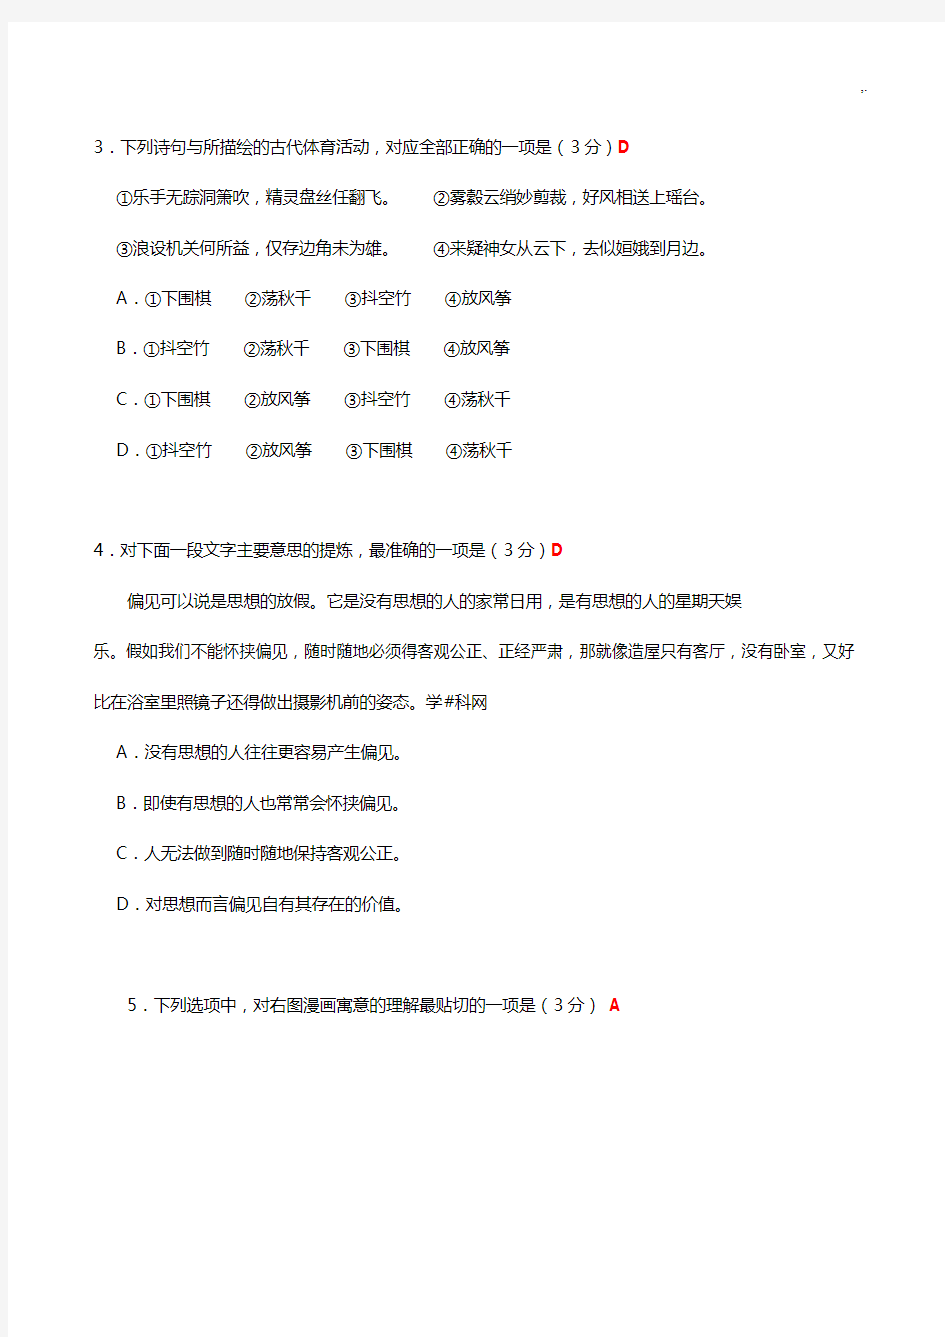 2018年度江苏语文高考卷含附加题规范标准答案版